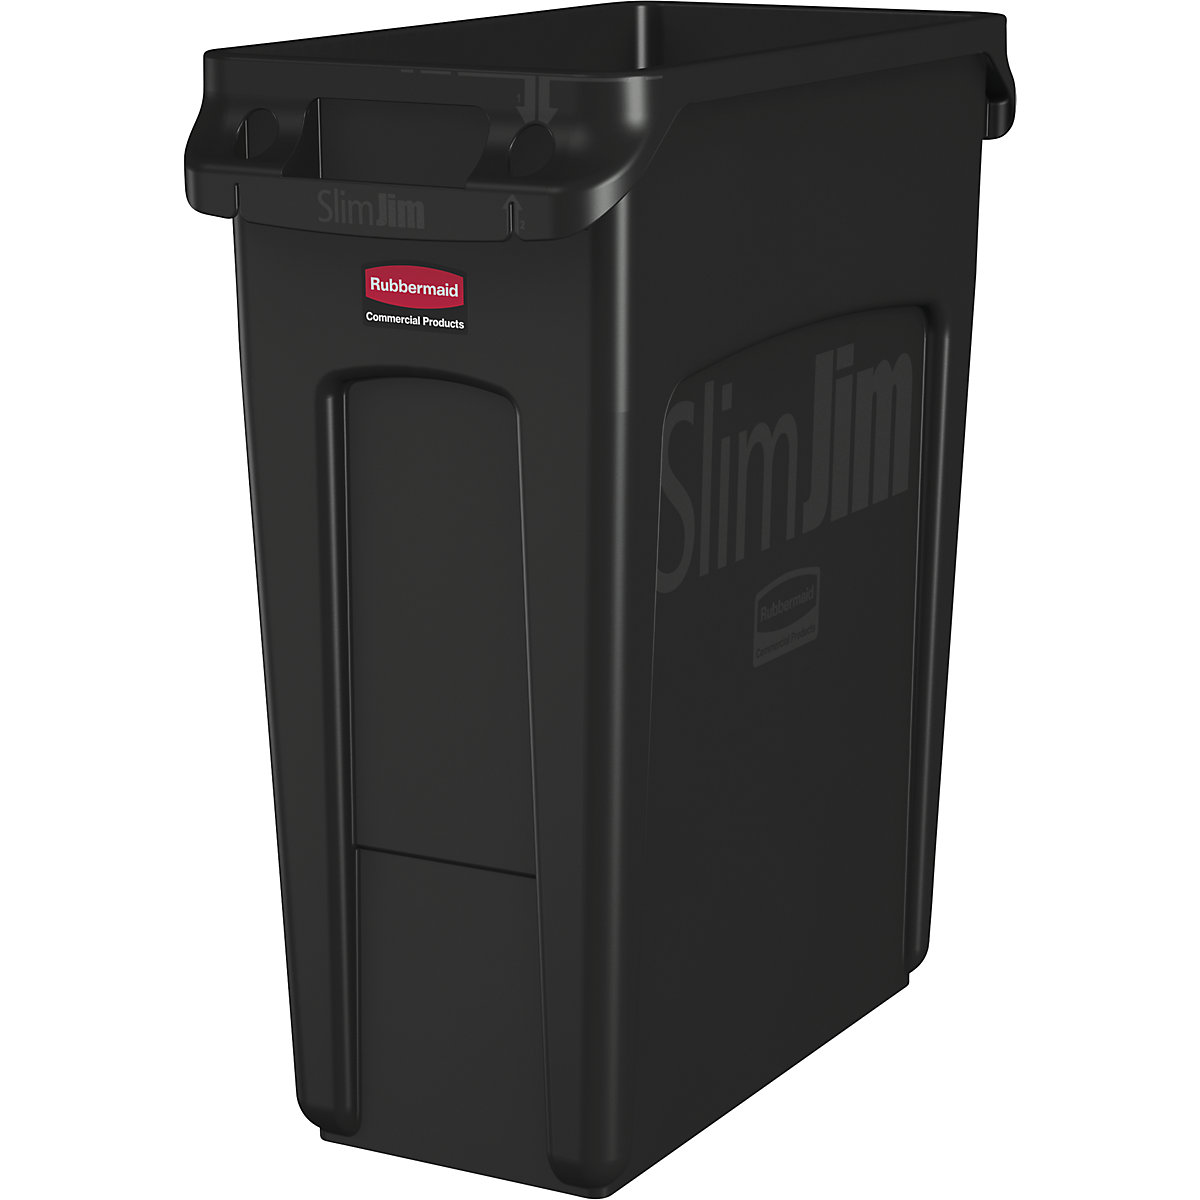 Verzamelaar voor kringloopmateriaal/afvalbak SLIM JIM® – Rubbermaid, volume 60 l, met ventilatiekanalen, zwart-10